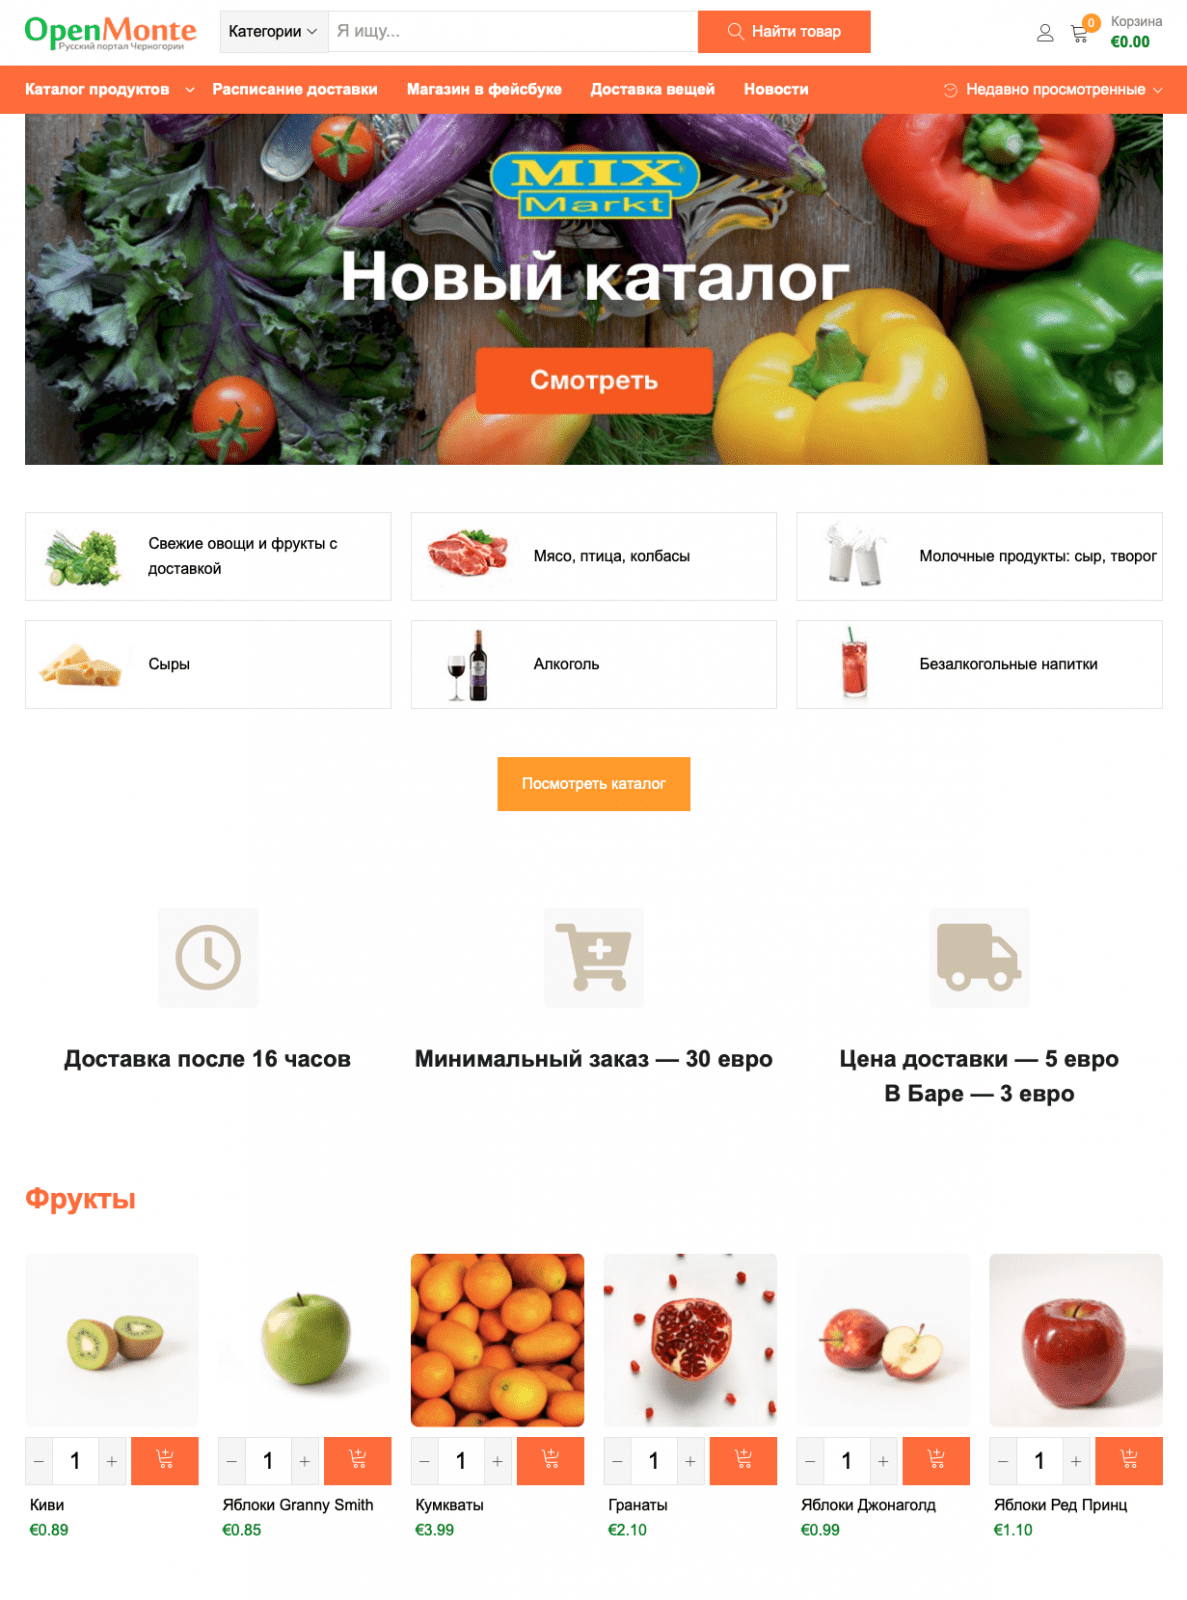 интернет-магазин МиксМаркт в Черногории с доставкой продуктов